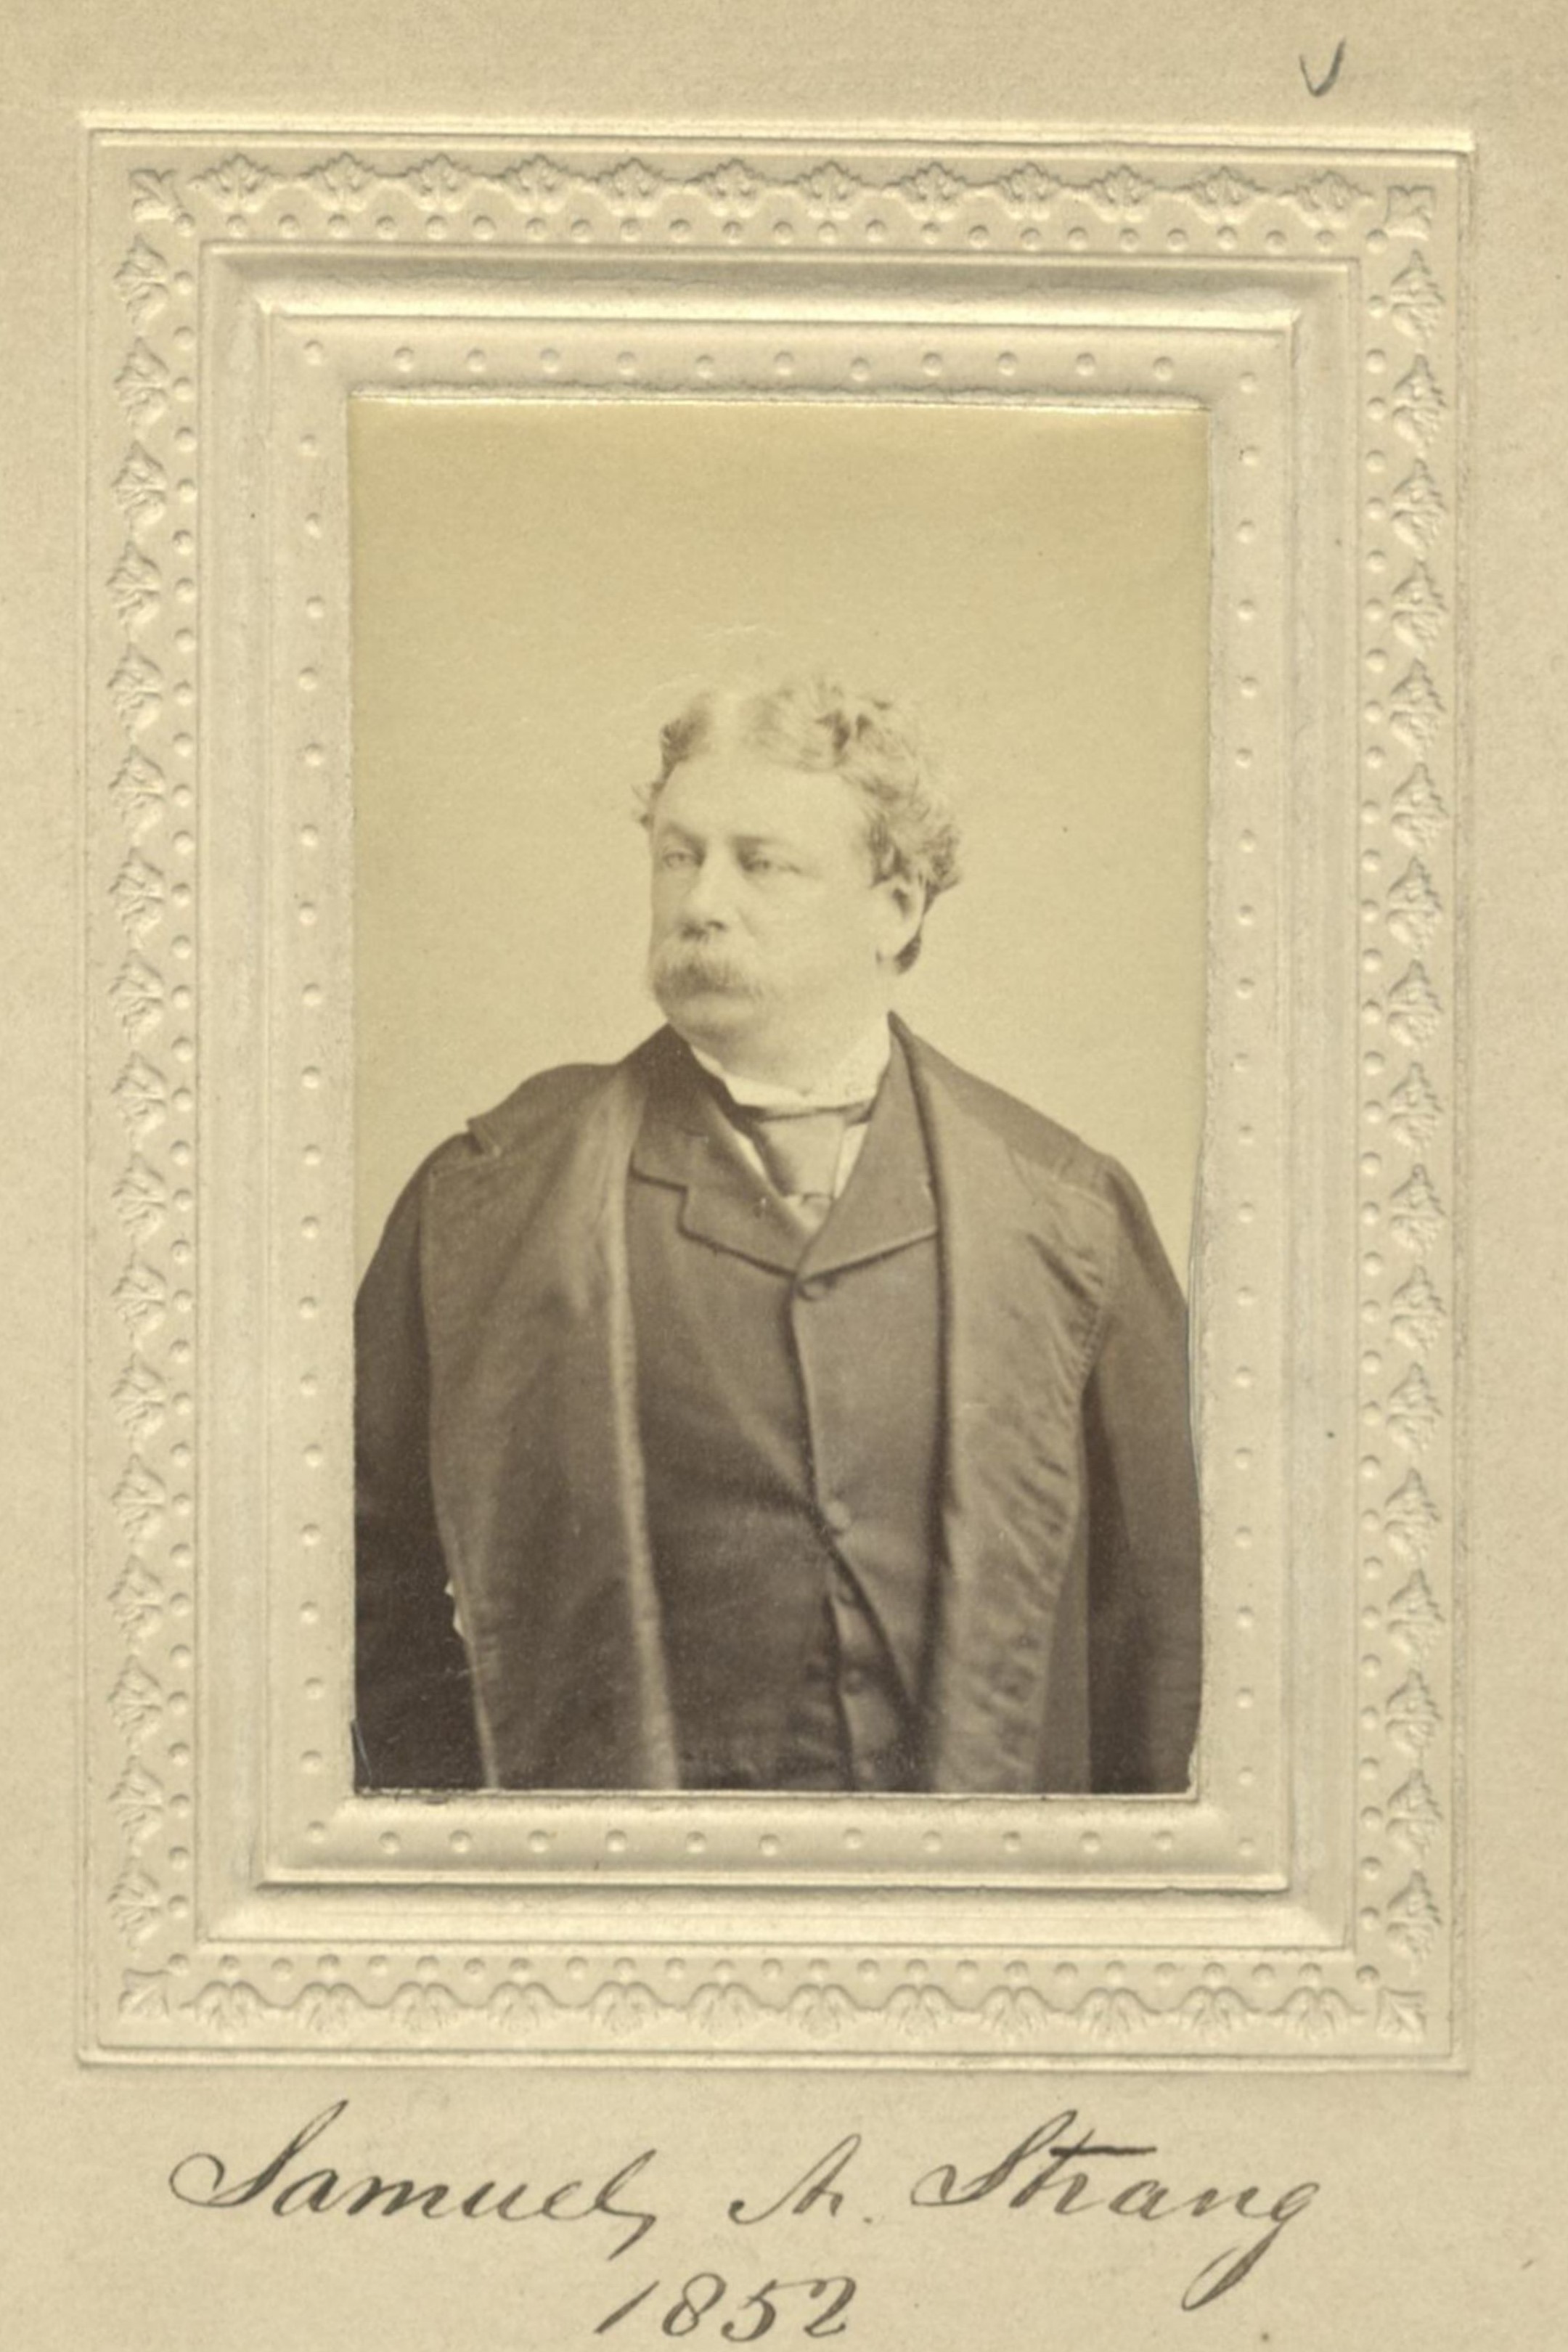 Member portrait of Samuel A. Strang